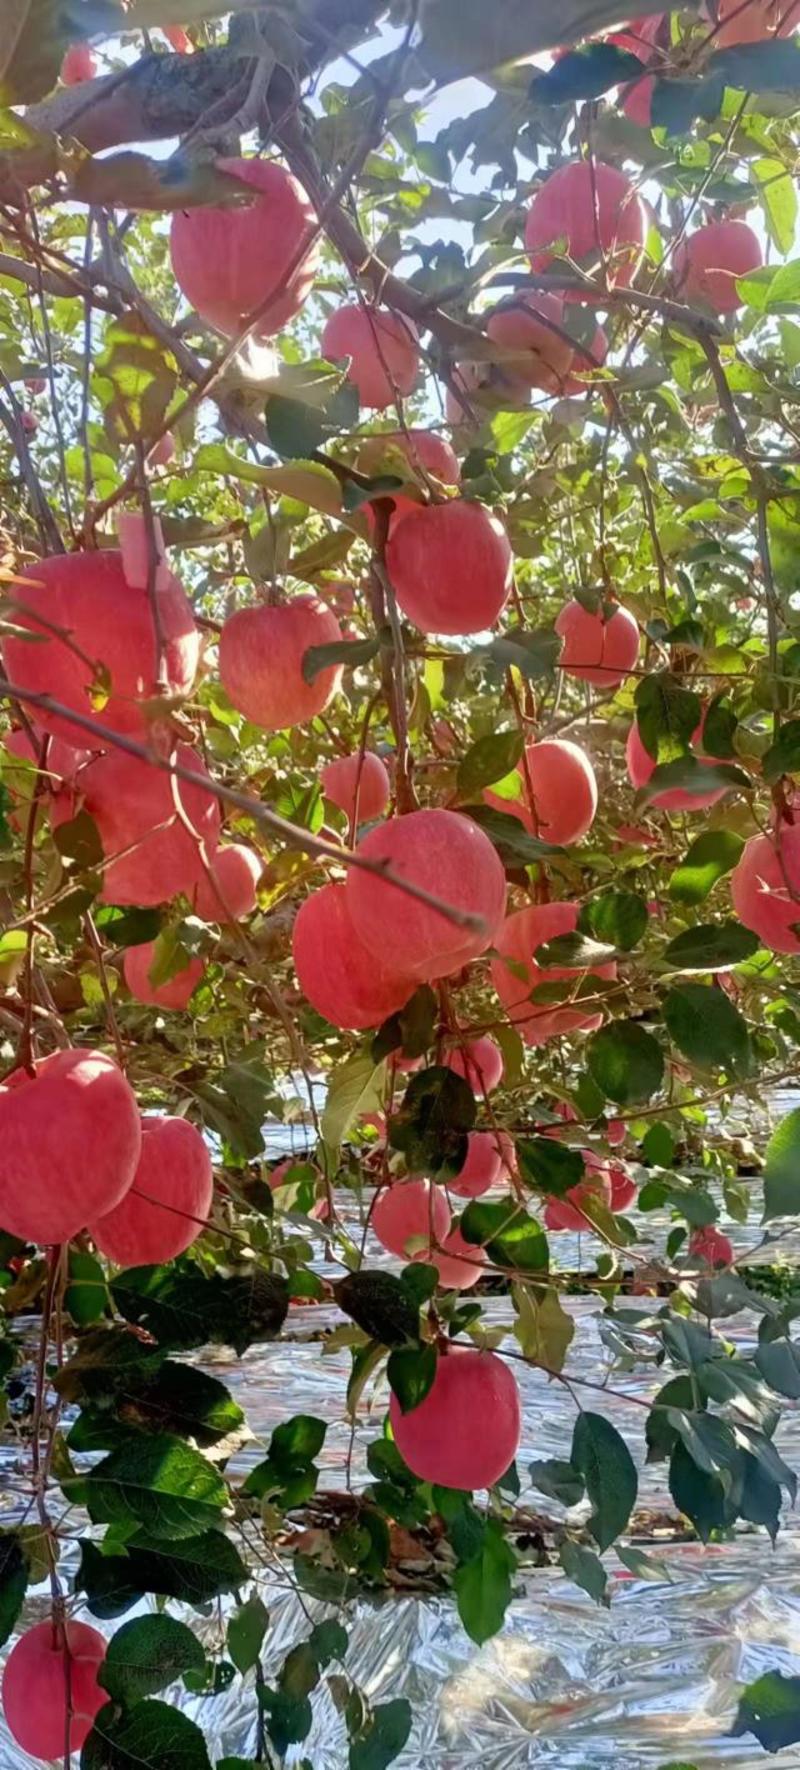 红富士苹果葫芦岛绥中苹果现货，品质优良质优价廉